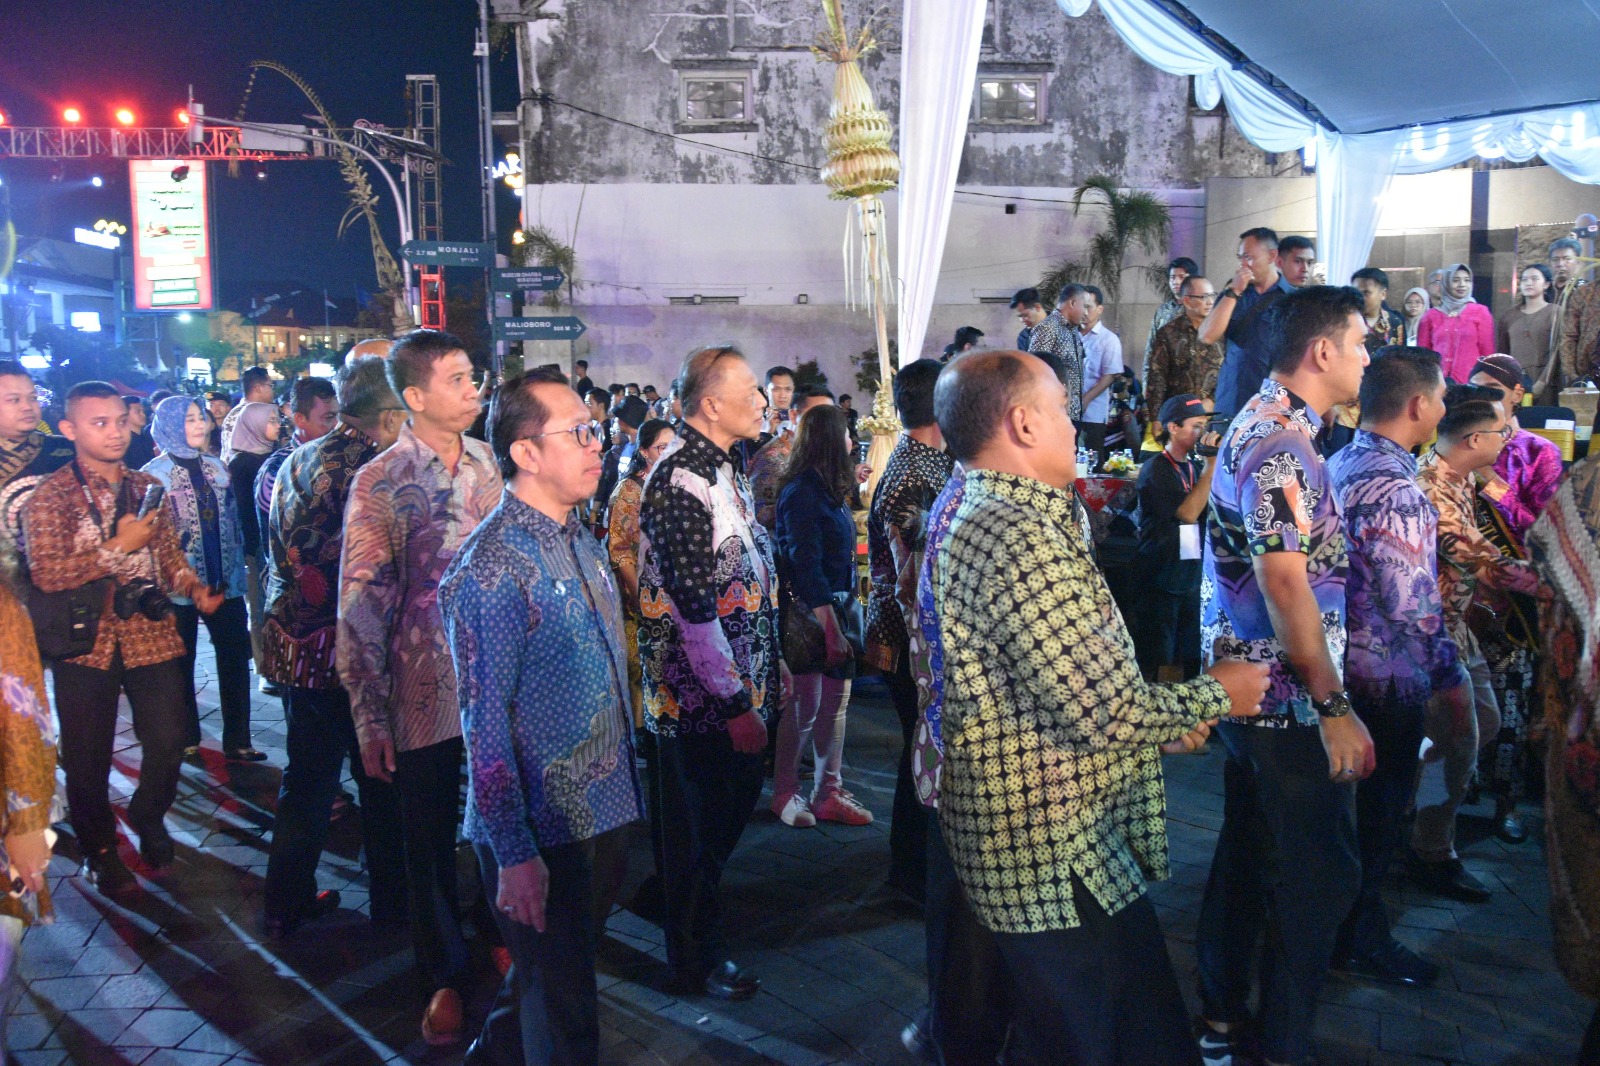 Ketua Pengadilan Negeri Yogyakarta Menghadiri Wayang Jogja Night Carnival #8 (WJNC)